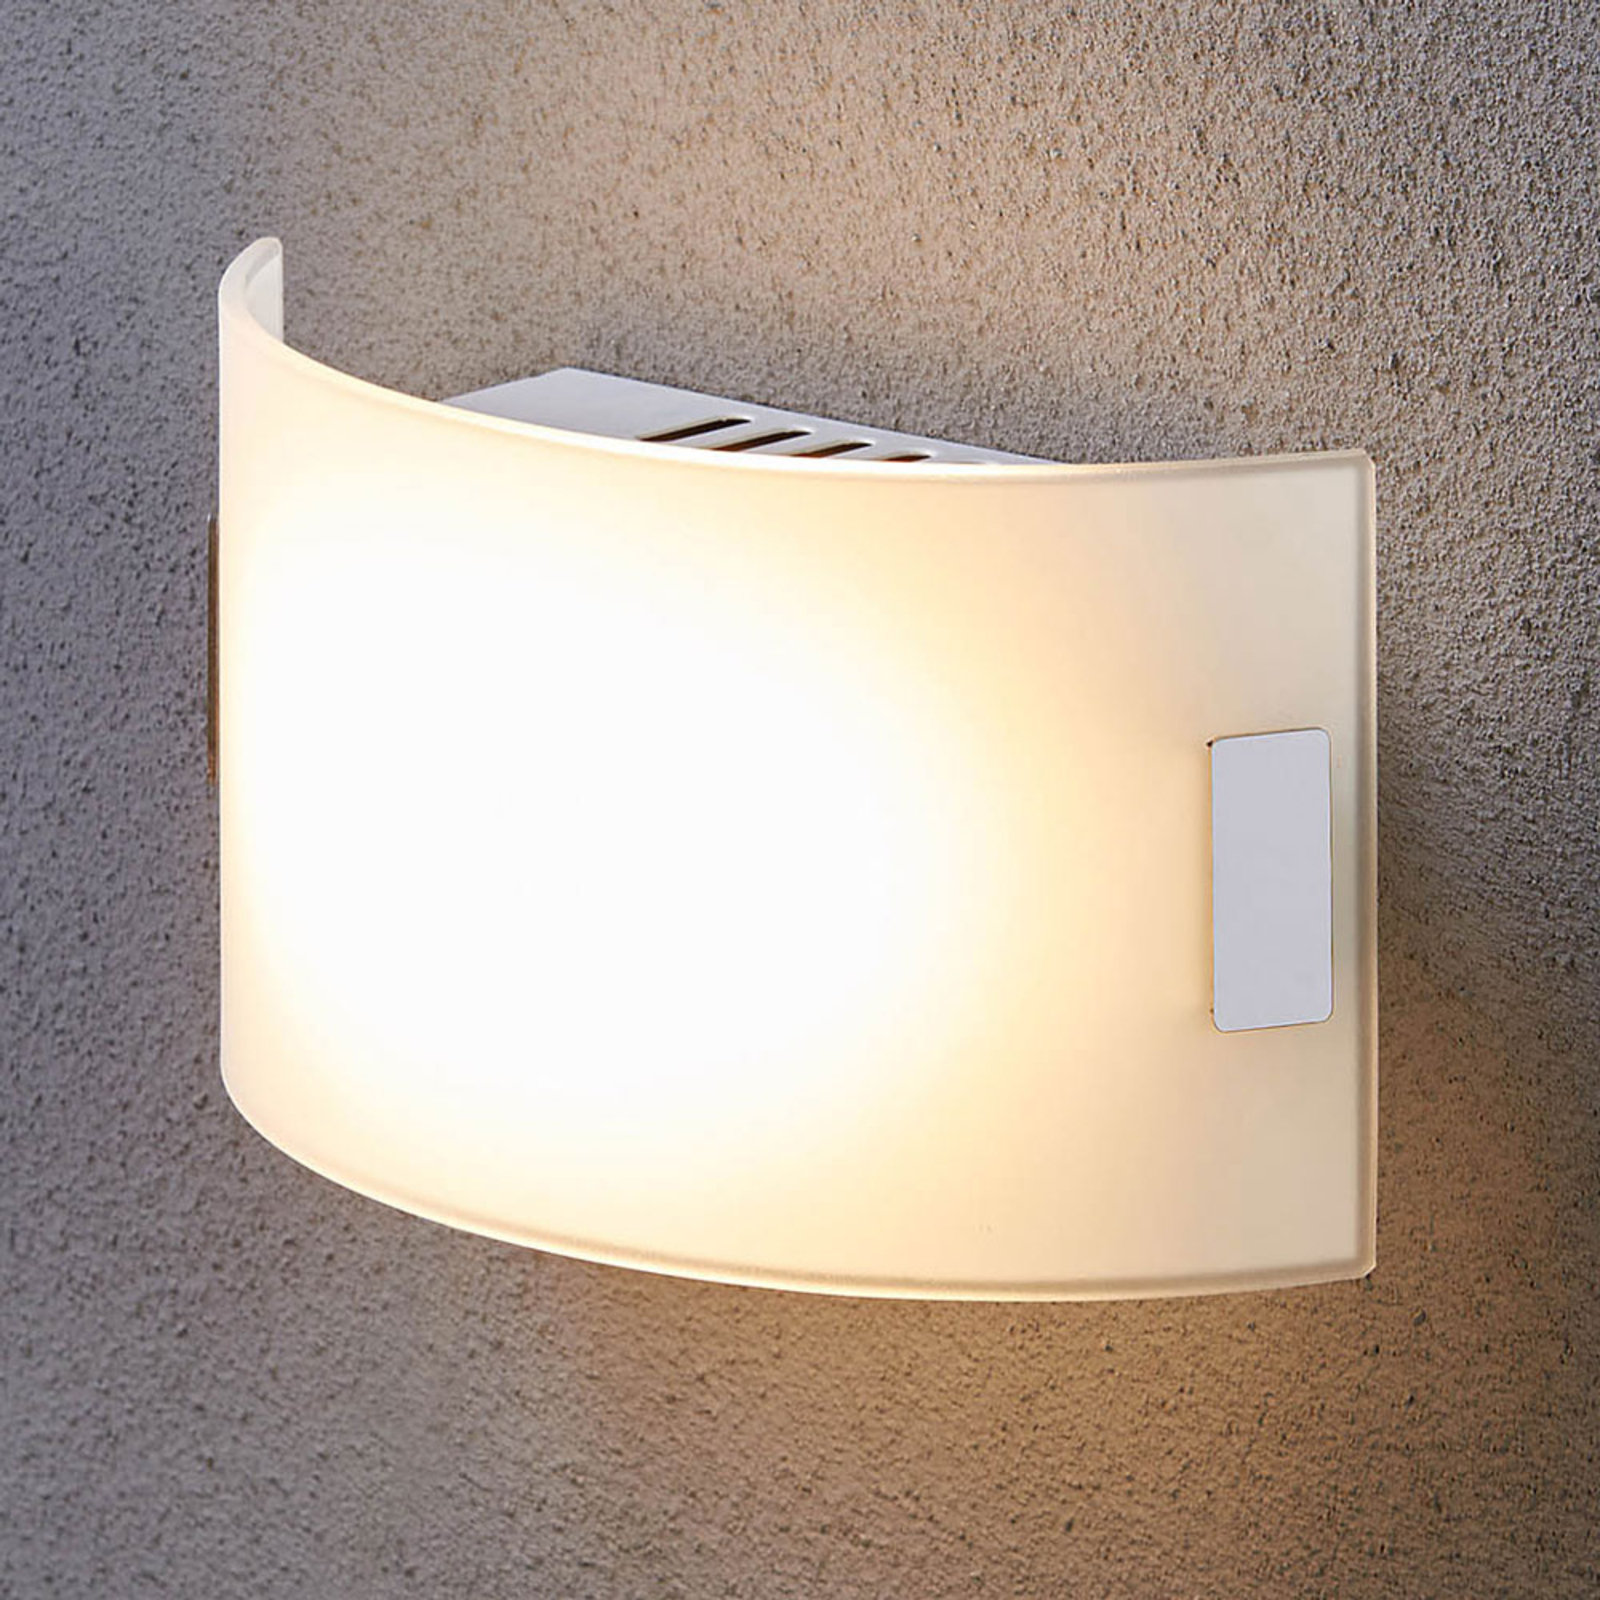 Valkoinen lasiseinävalaisin Gisela, LED-varustus